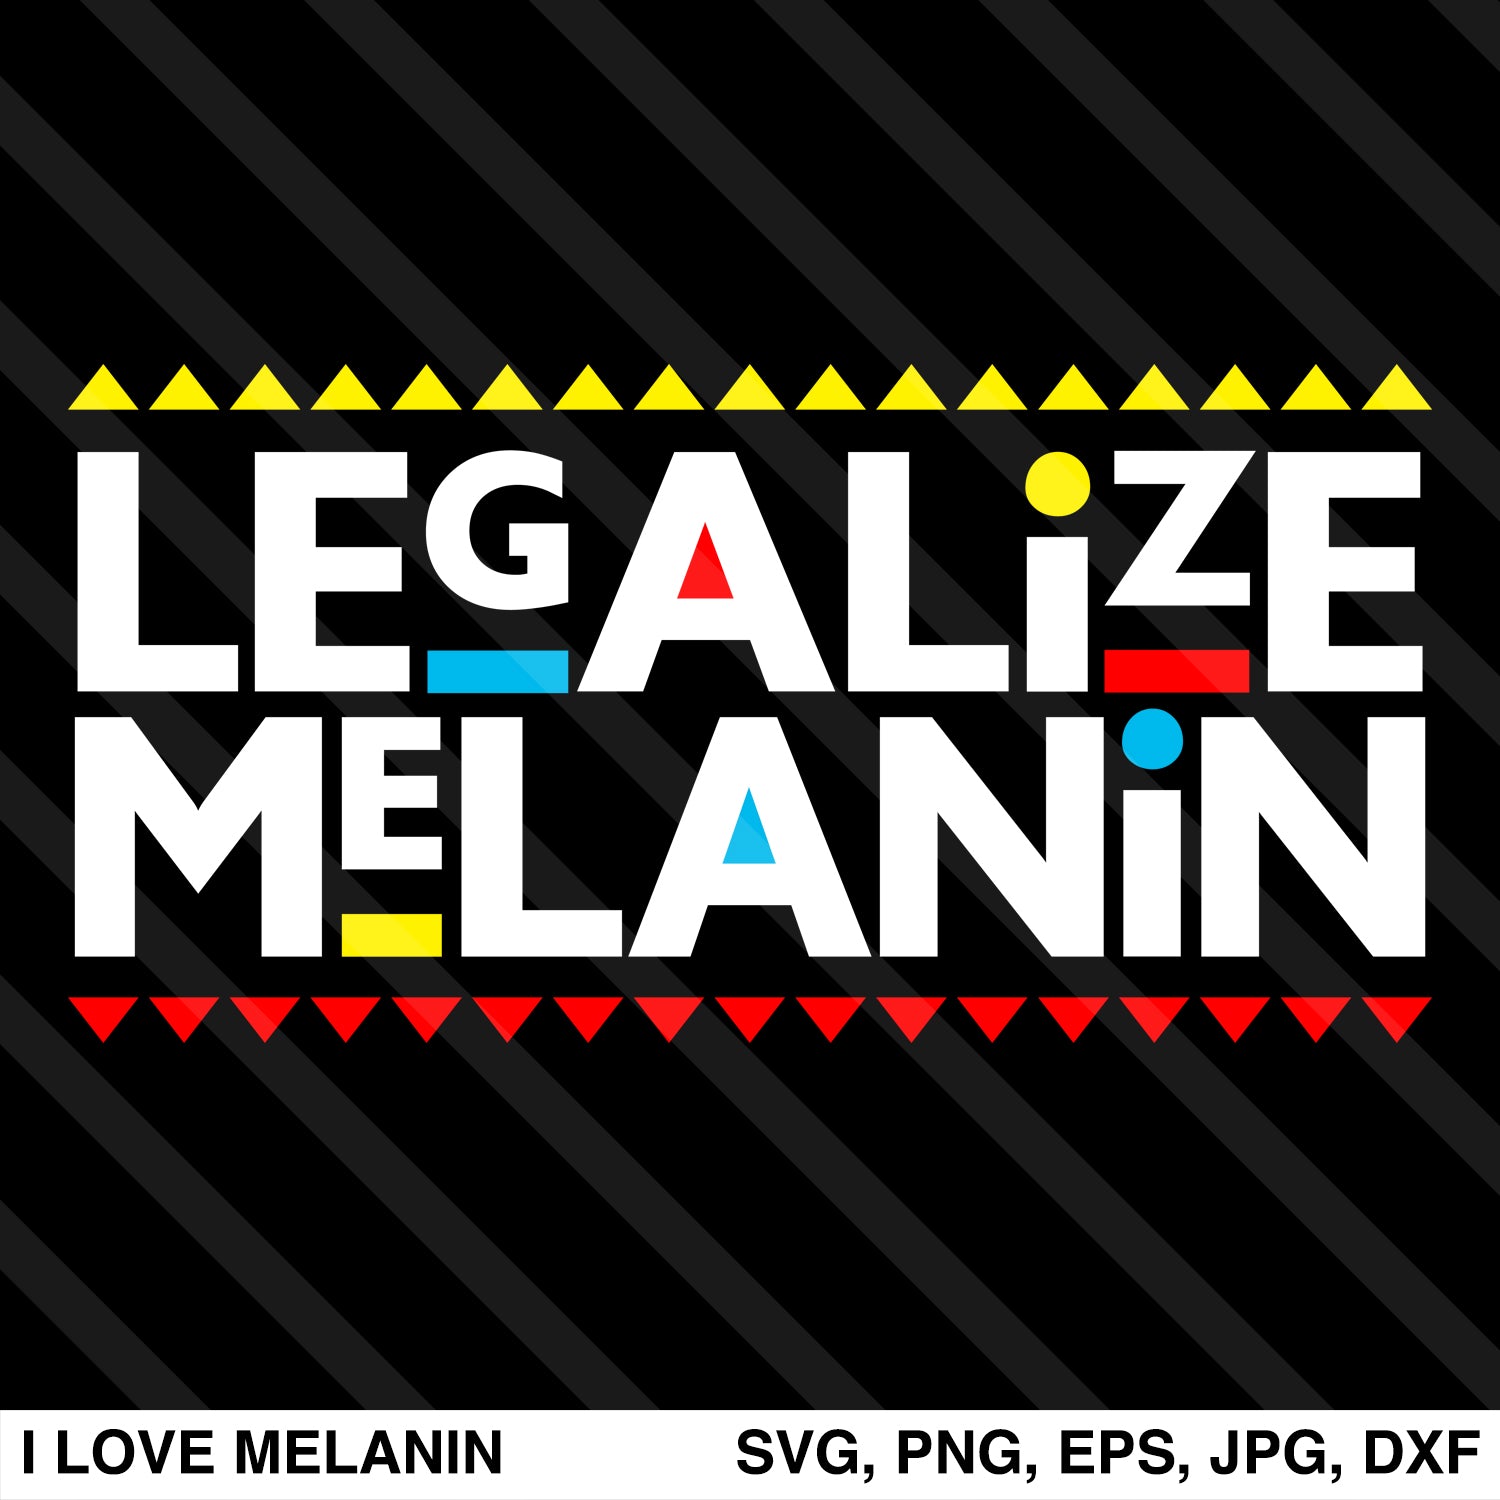 Legalize Melanin SVG